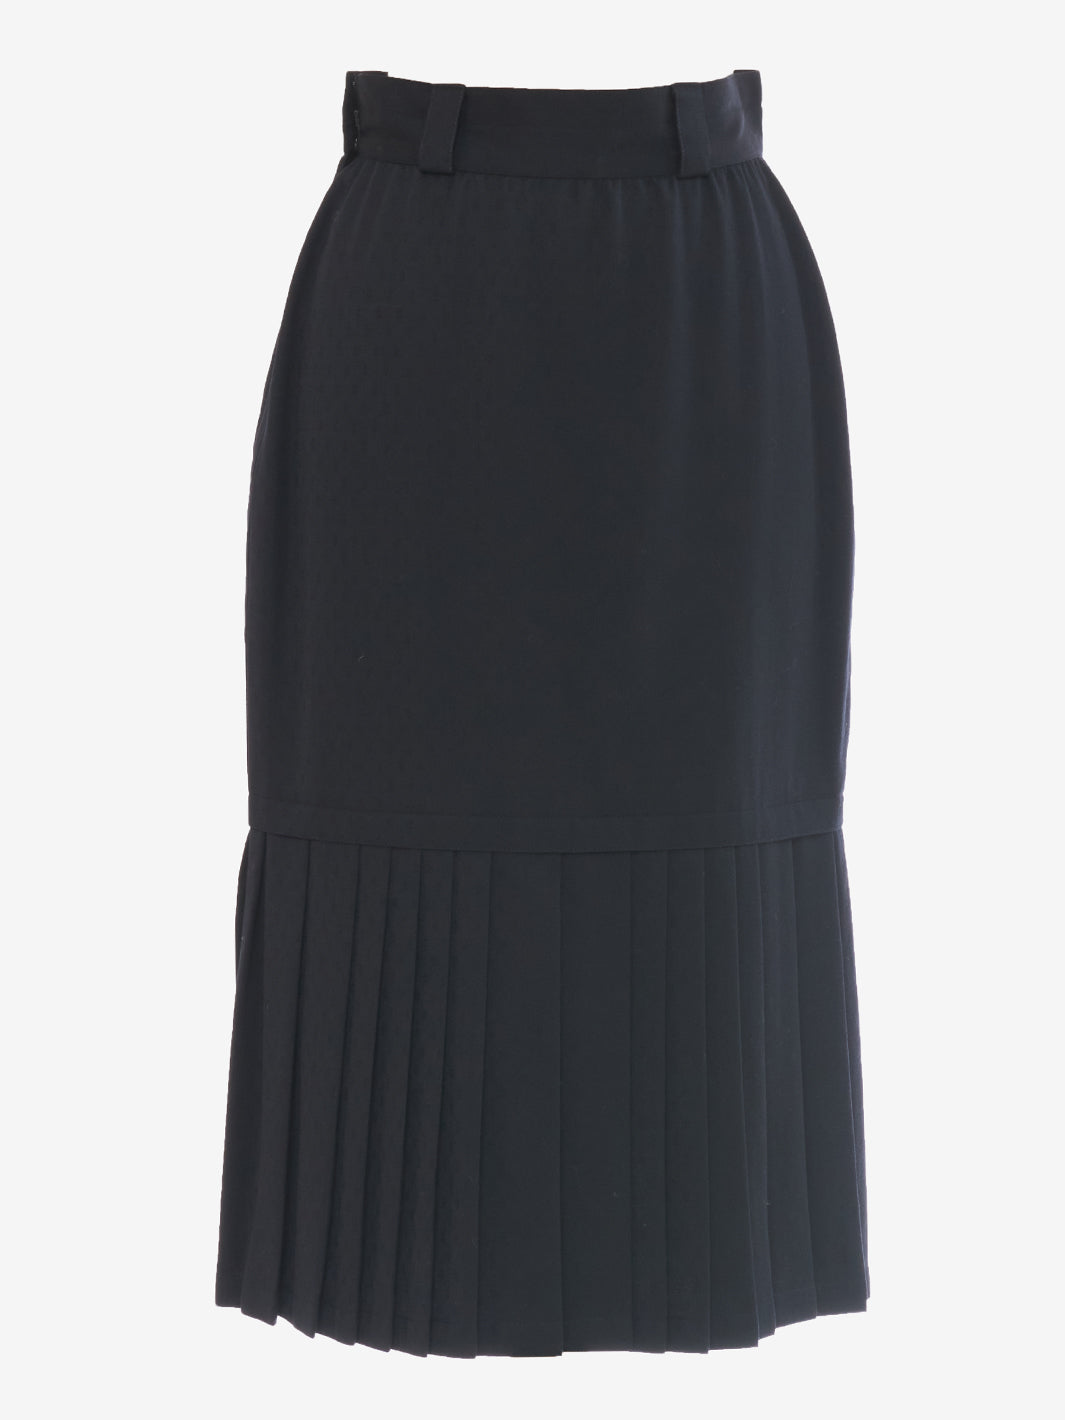 Gianni Versace Skirt